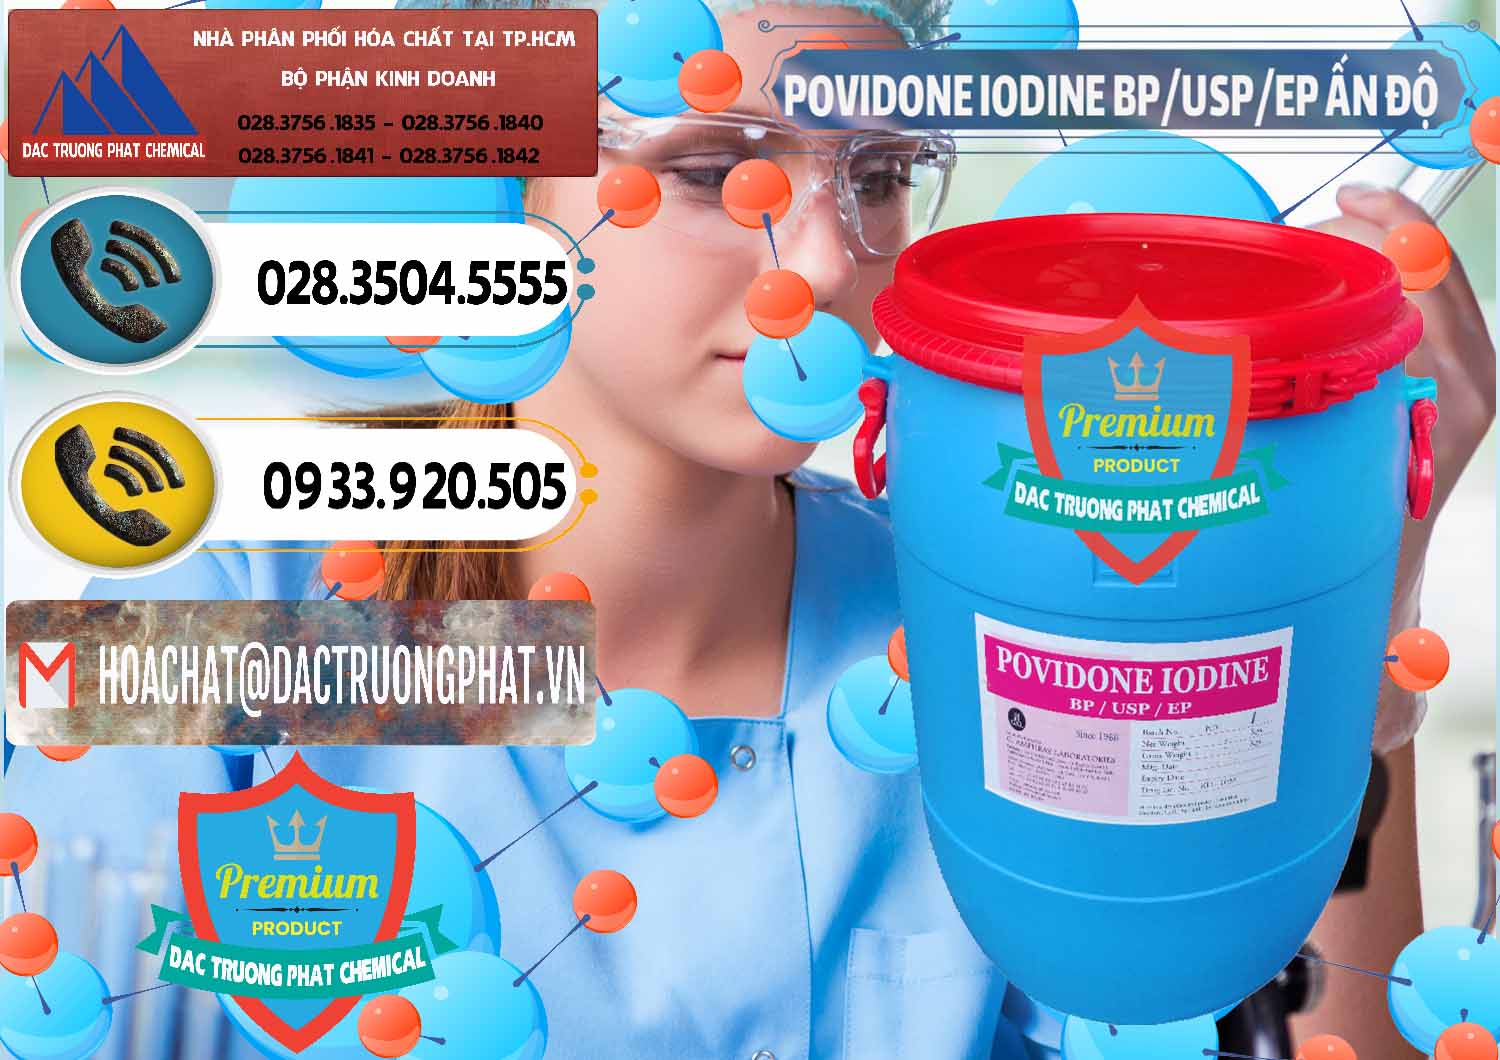 Nơi bán - cung cấp Povidone Iodine BP USP EP Ấn Độ India - 0318 - Nơi bán ( cung cấp ) hóa chất tại TP.HCM - hoachatdetnhuom.vn